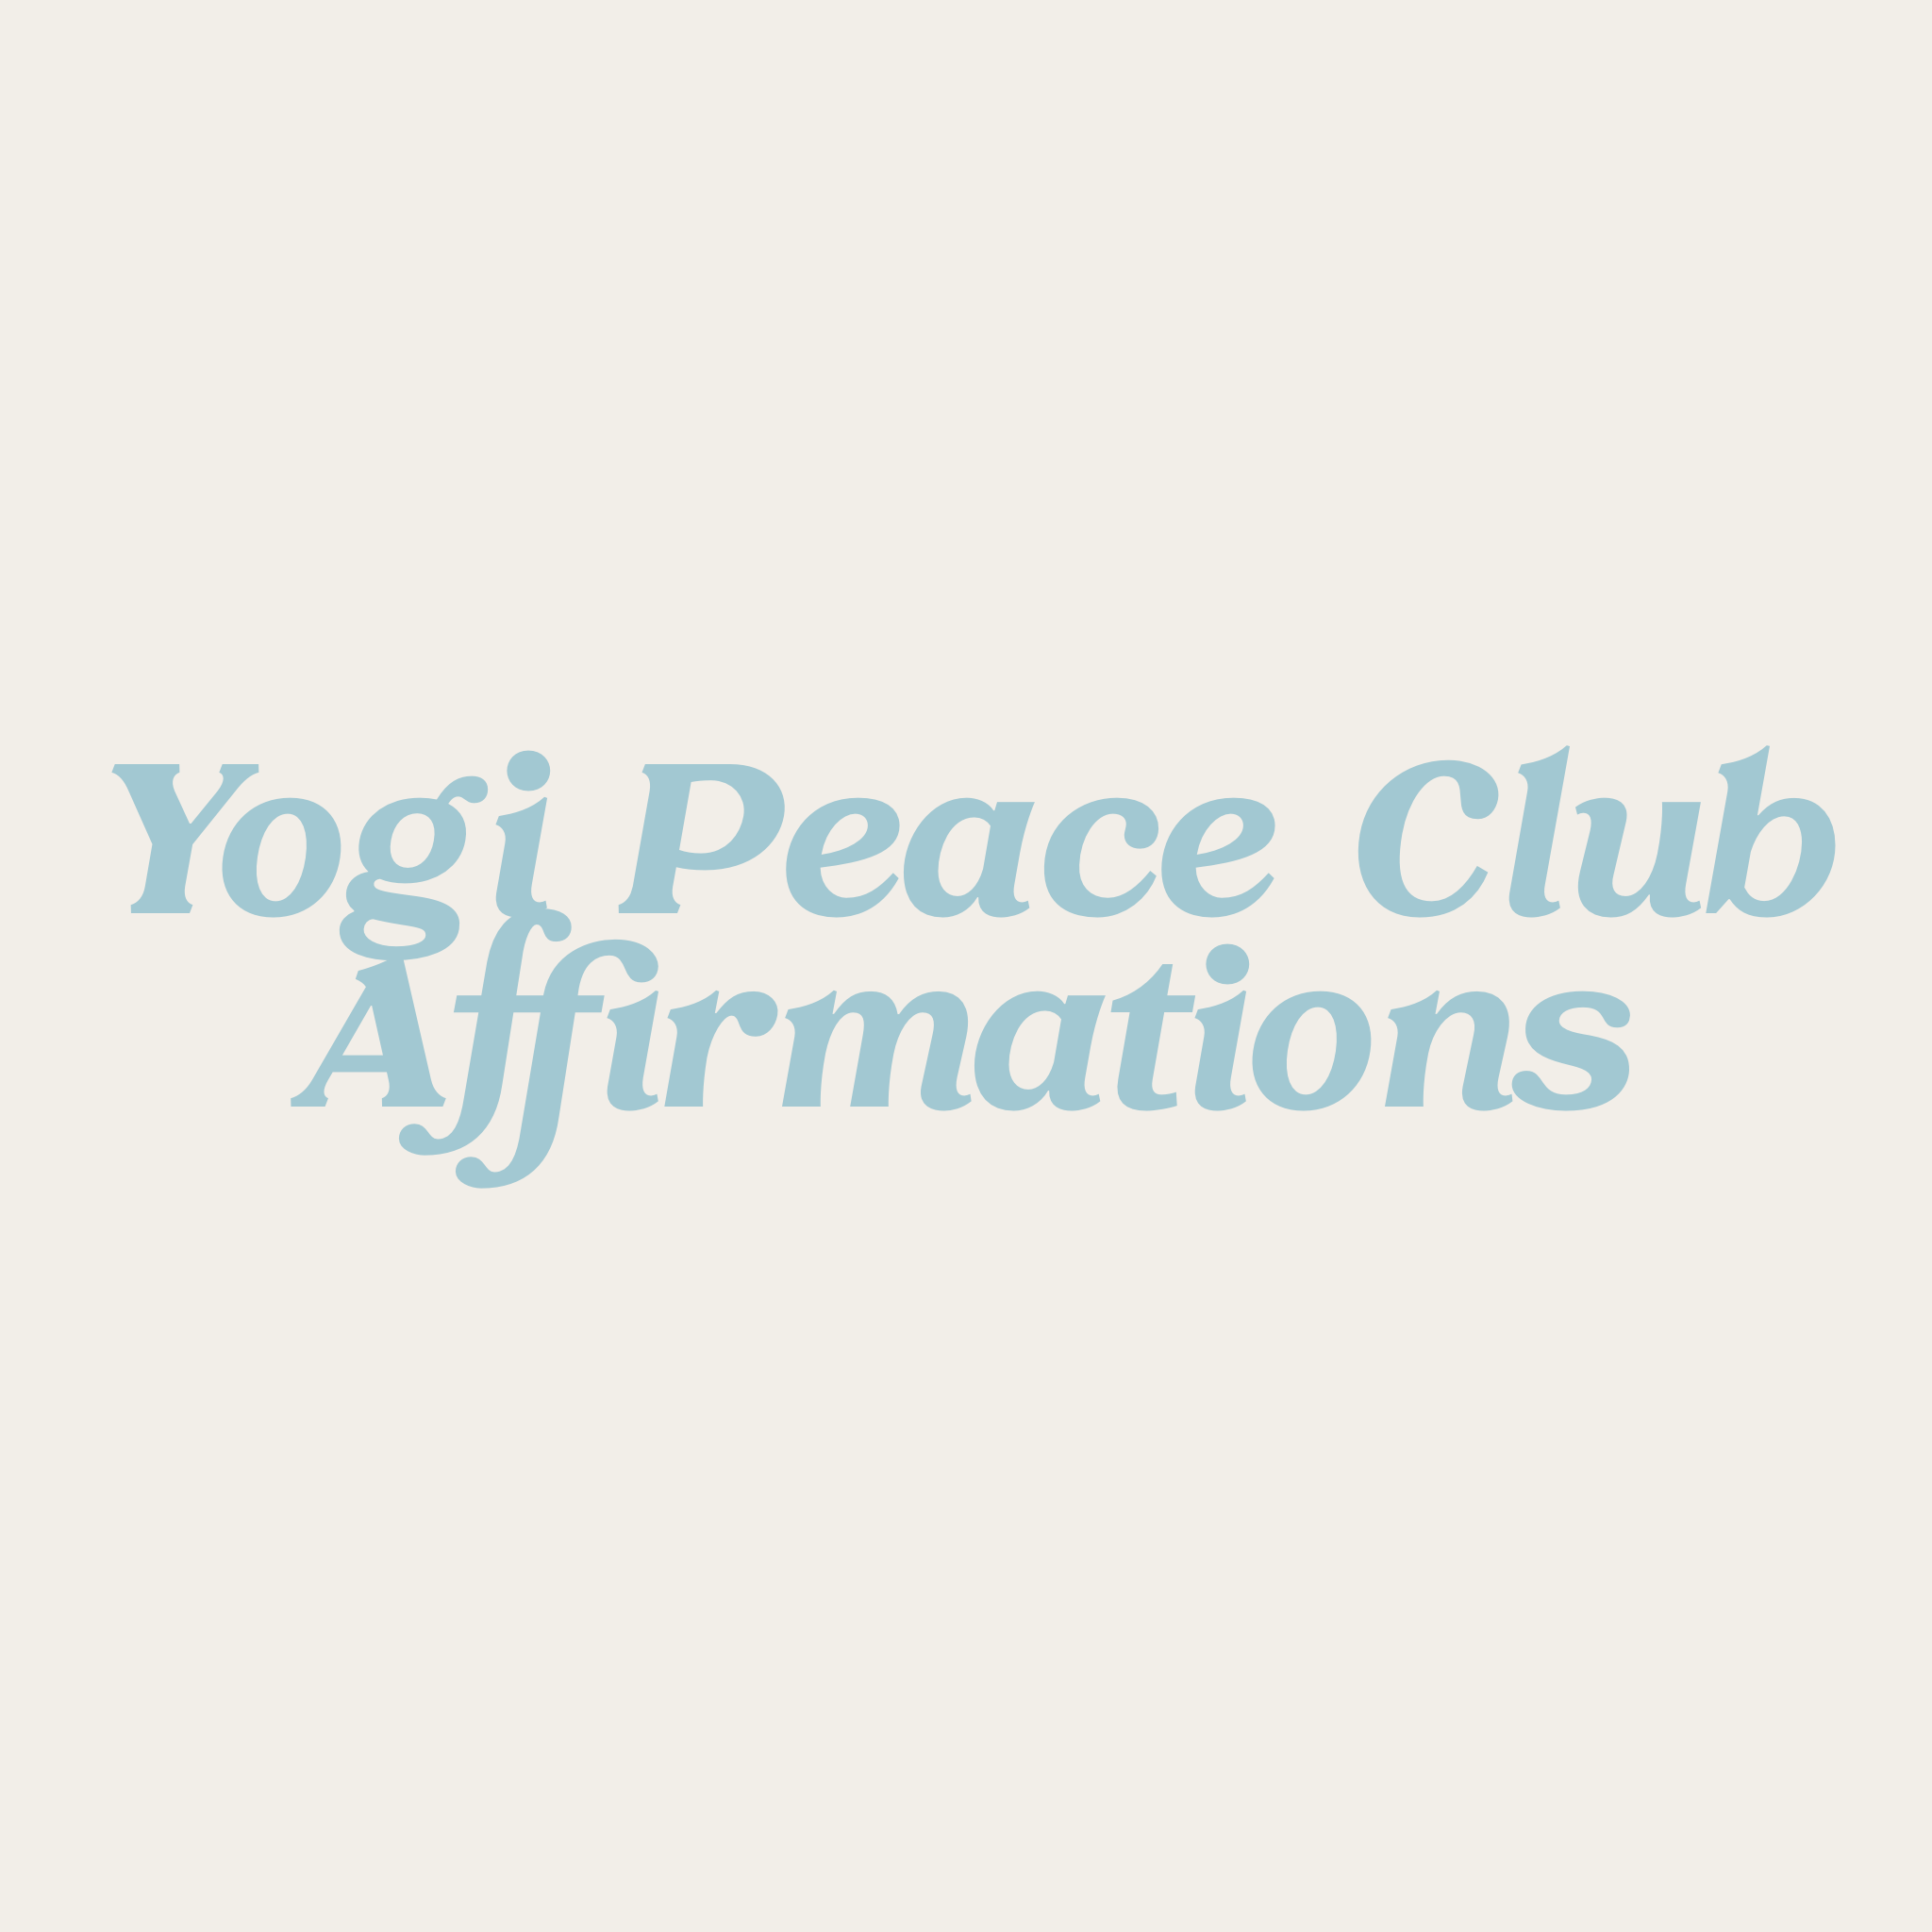 Yogi Peace Club Affirmations - Yogi Peace Club